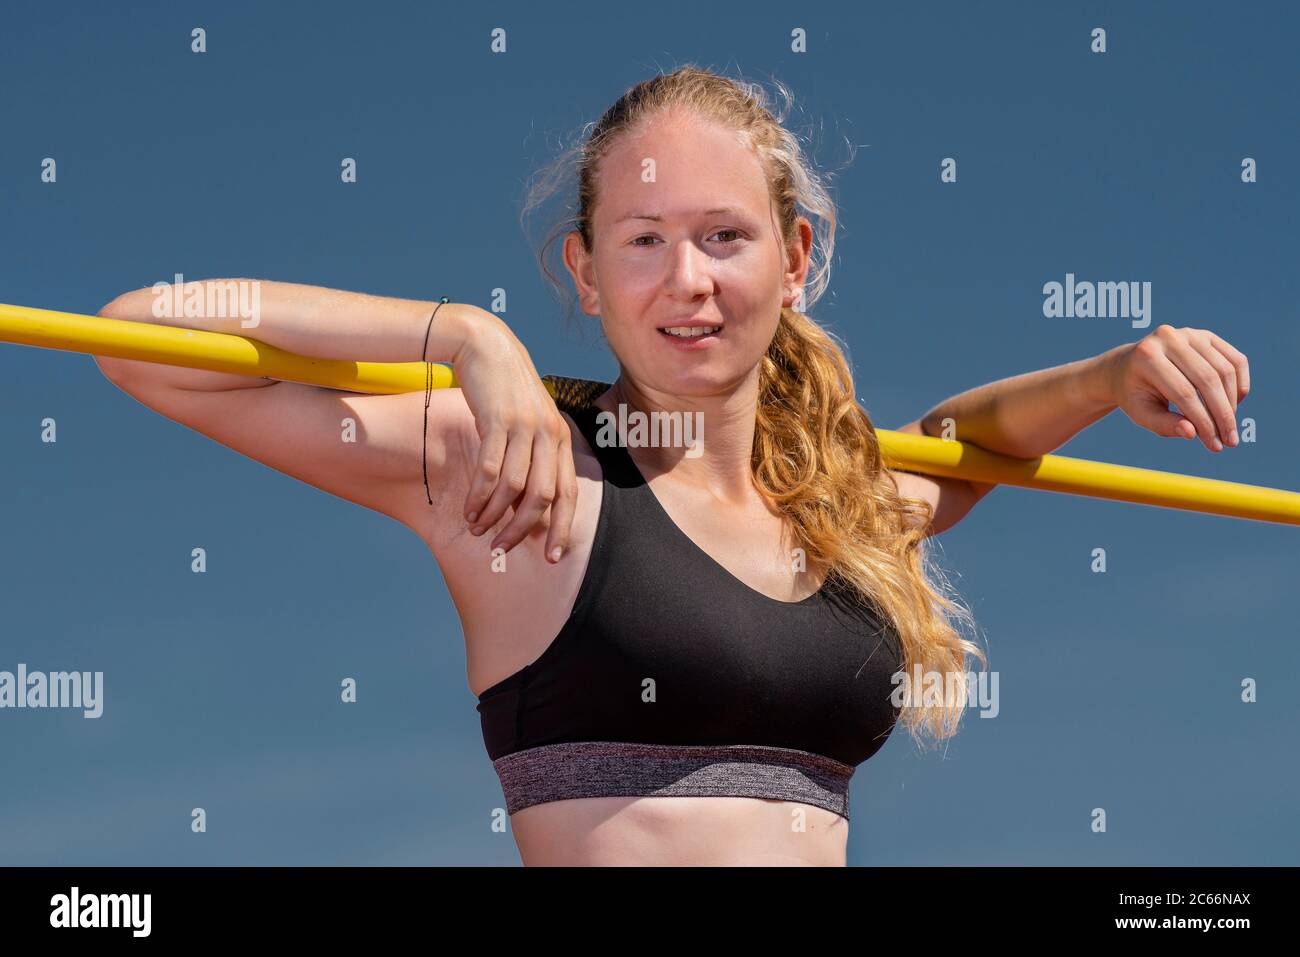 Femme, 21 ans, piste et terrain, lancer de javelin Banque D'Images